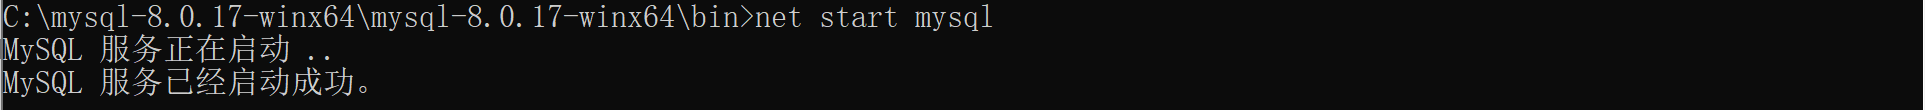 mysql 8.0.17 安装与使用教程图解